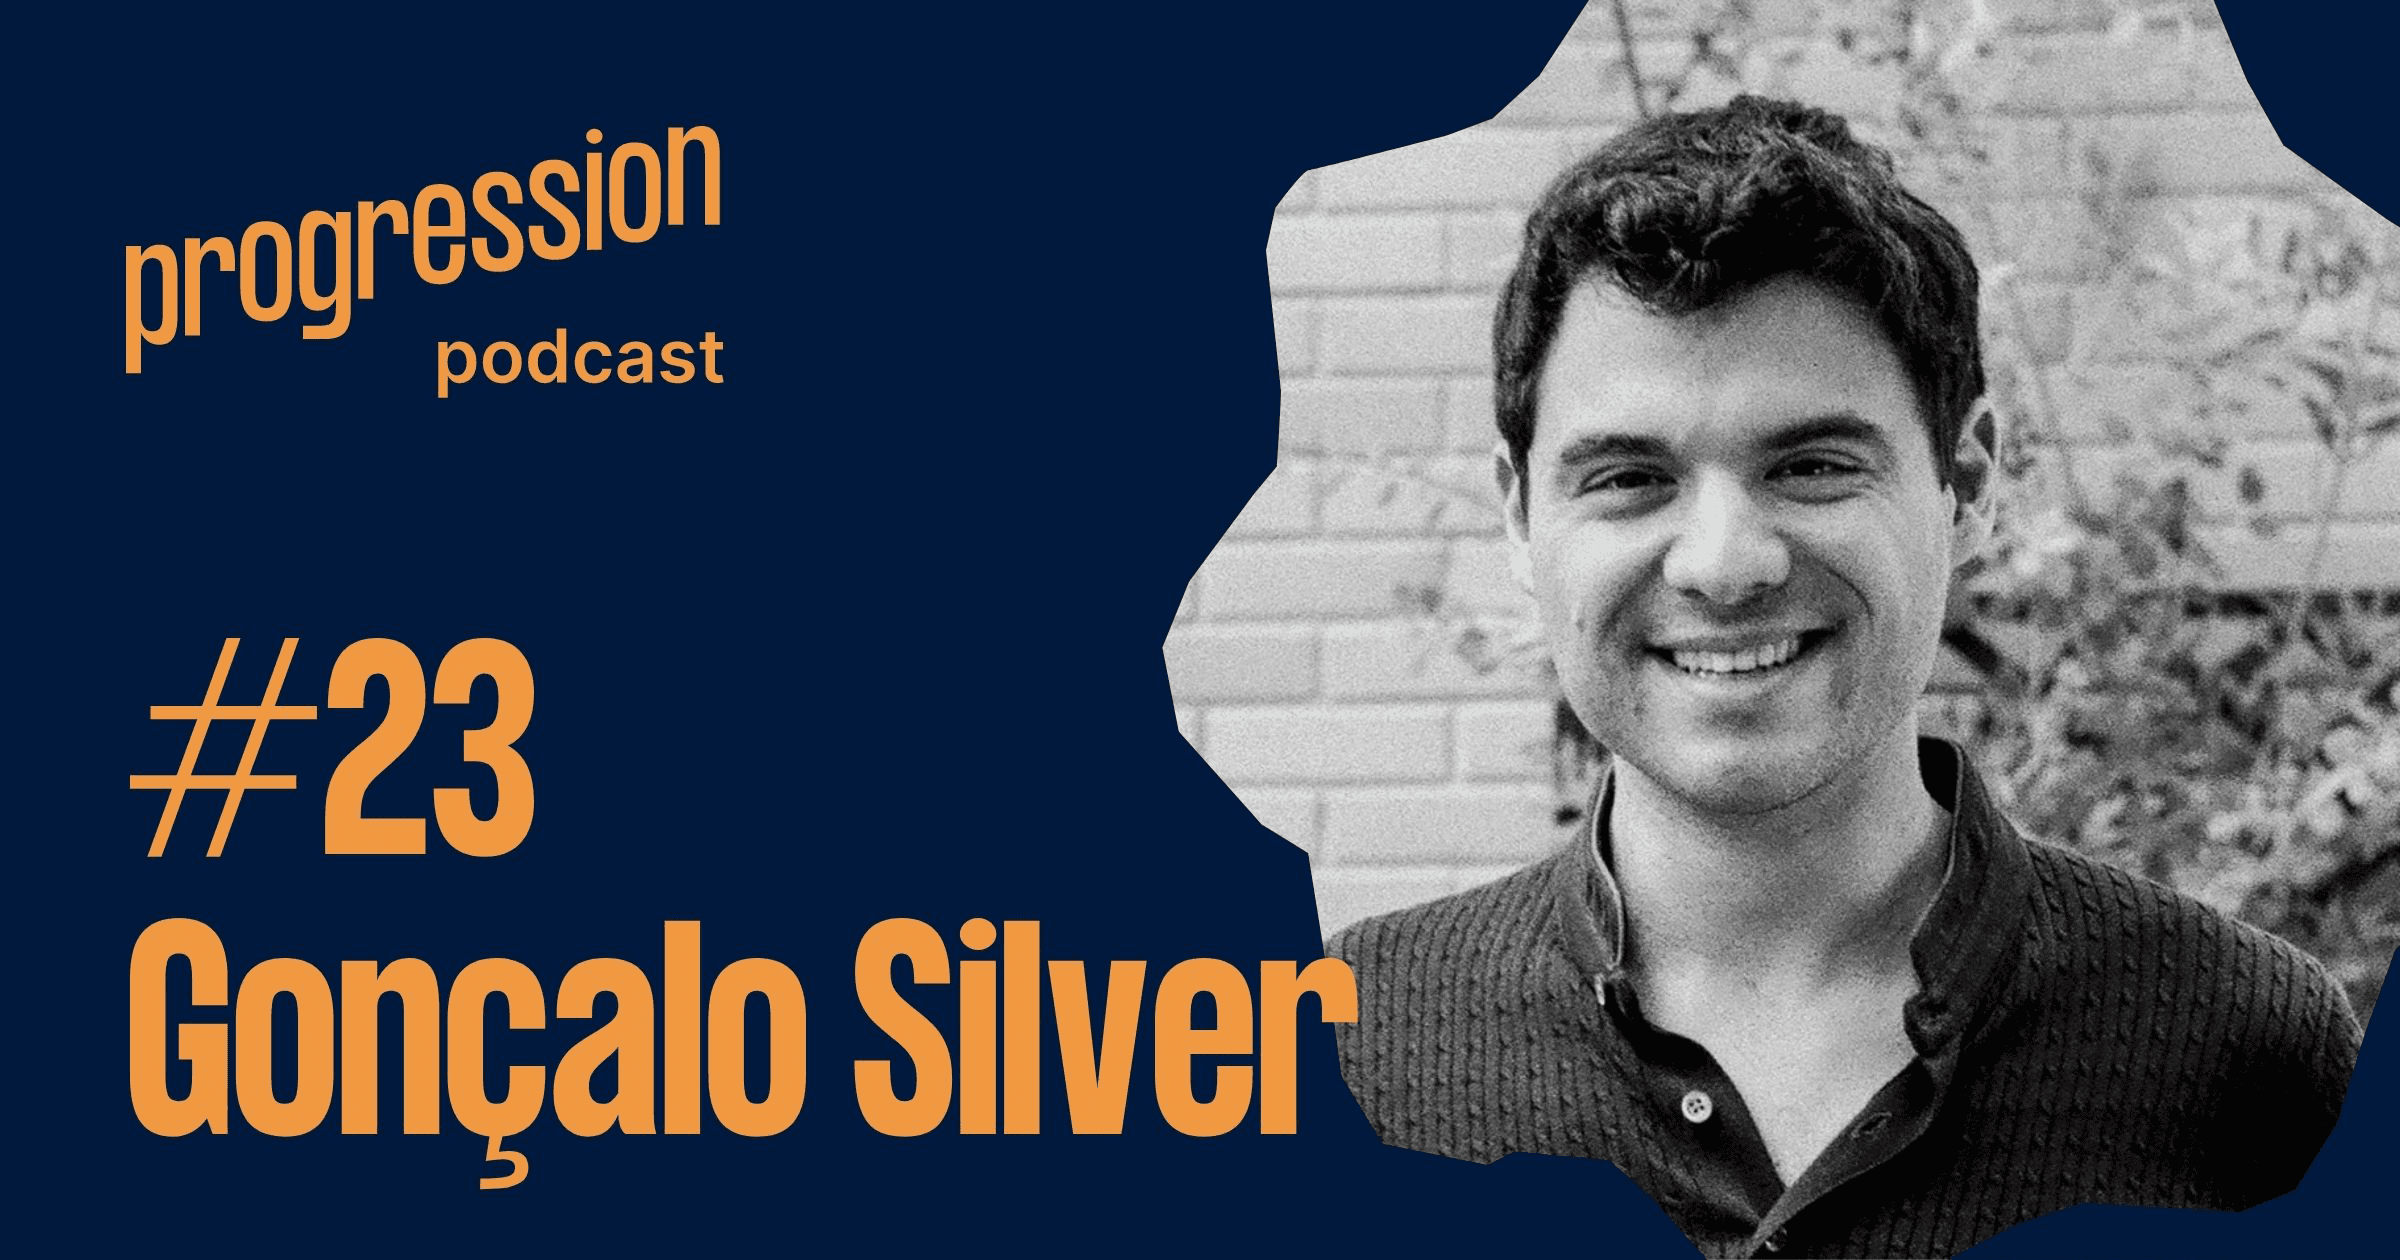 Podcast #23: Gonçalo Silva (CTO, Doist) on building progression frameworks for a distributed team